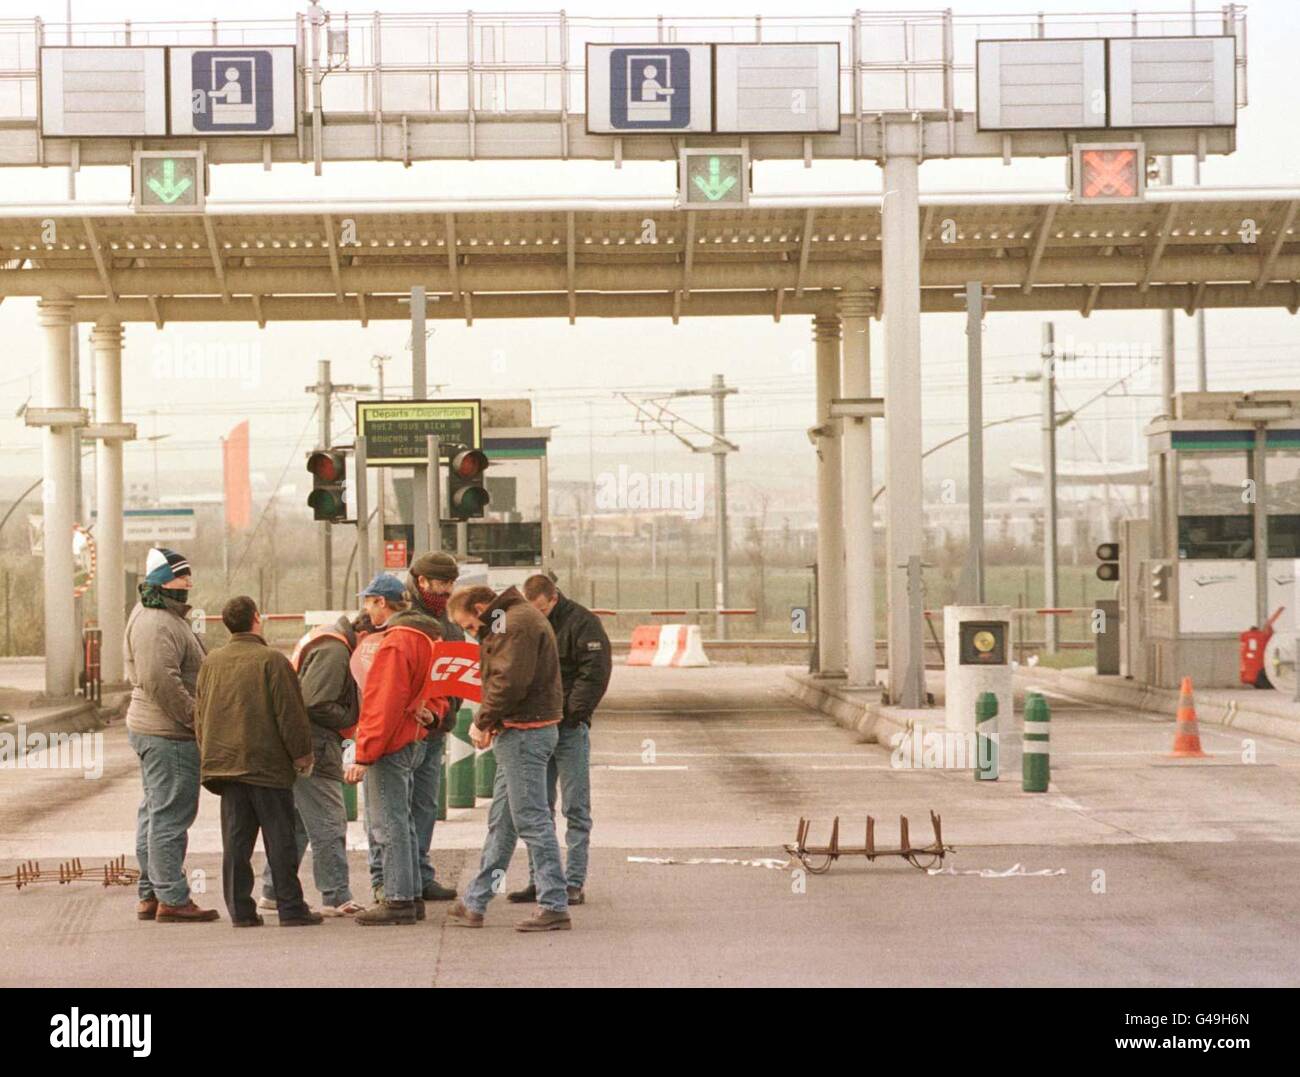 Gli autisti di camion francesi che colpiscono bloccano l'ingresso alla navetta (terminal merci) a Calais, oggi (martedì). Vedere PA Story TRANSPORT Trucks. Foto di Tim Ockenden/PA Foto Stock